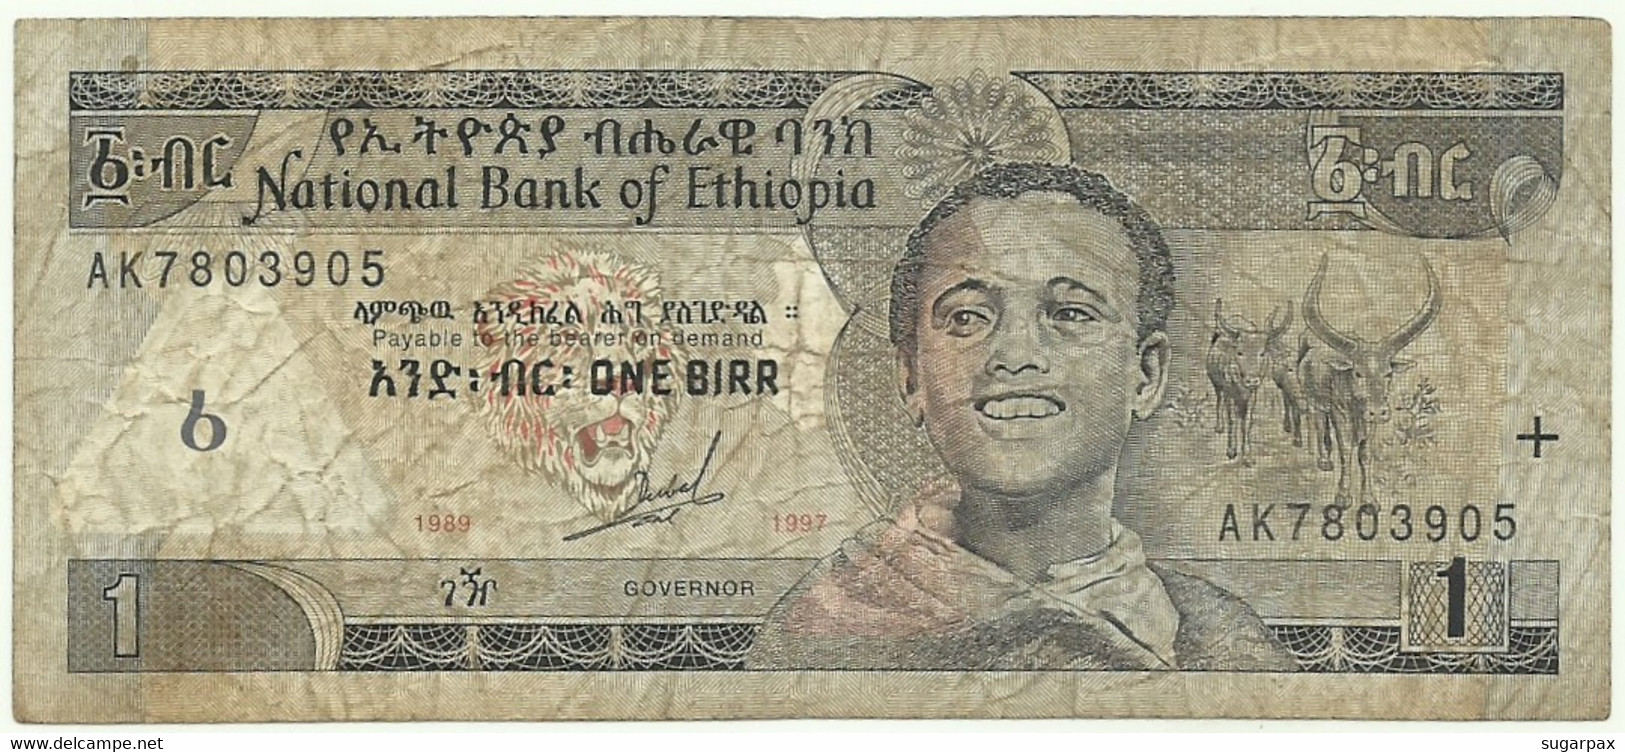 Ethiopia - 1 Birr - 1997 / EE 1989 - Pick 46.a - Sign. 5 ( 1997 - 1998 ) - Serie AK - Ethiopia